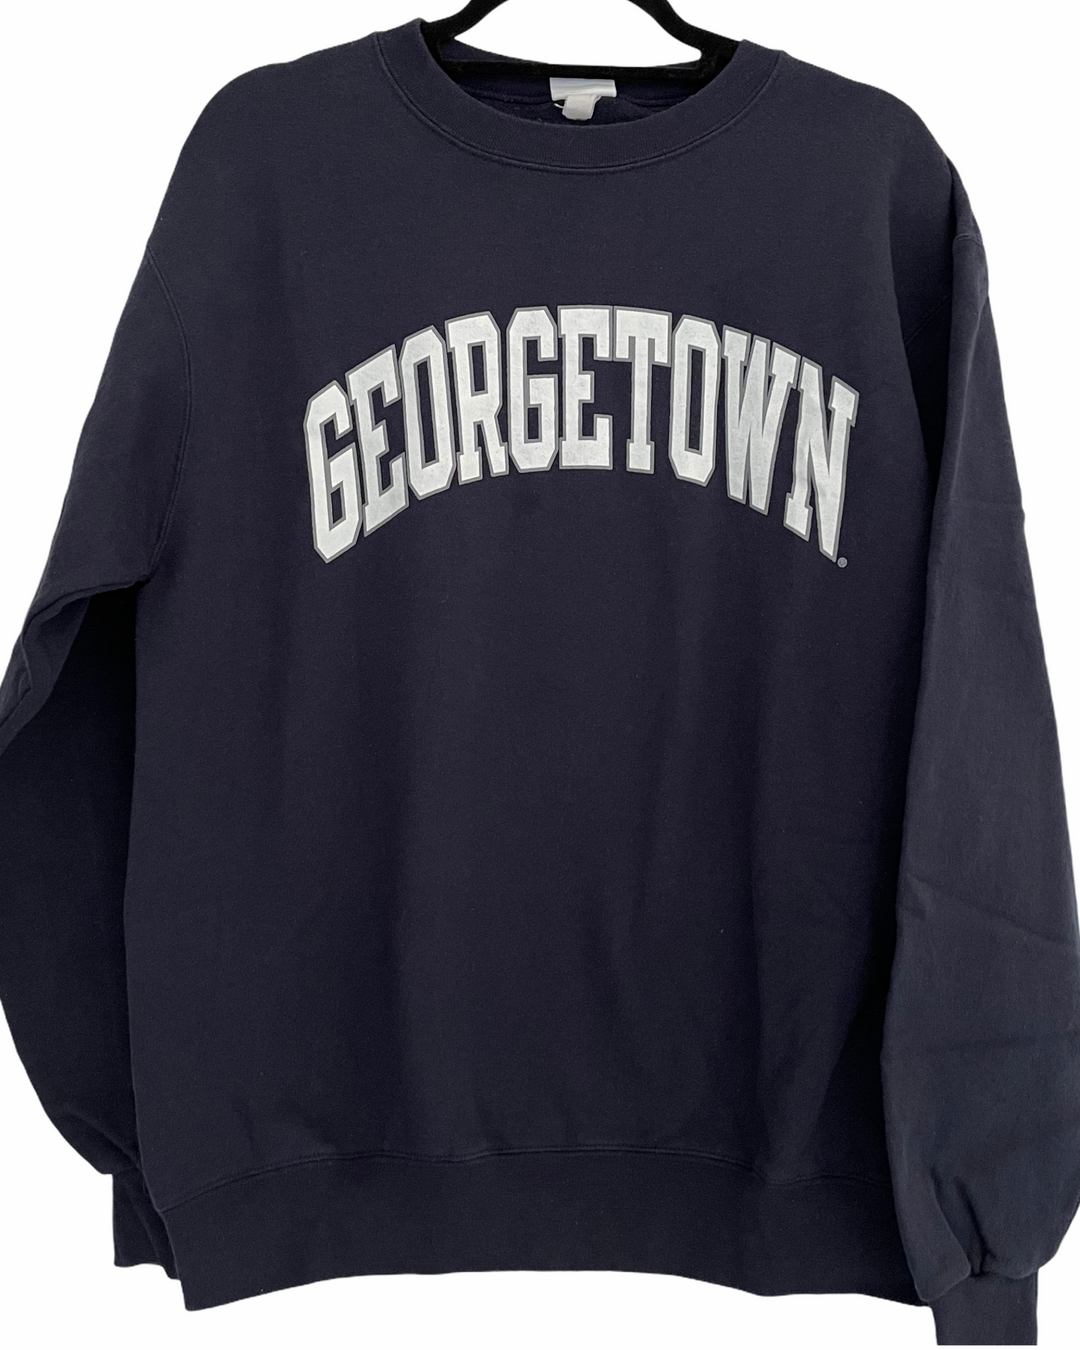 Georgetown Vintage Sweatshirt